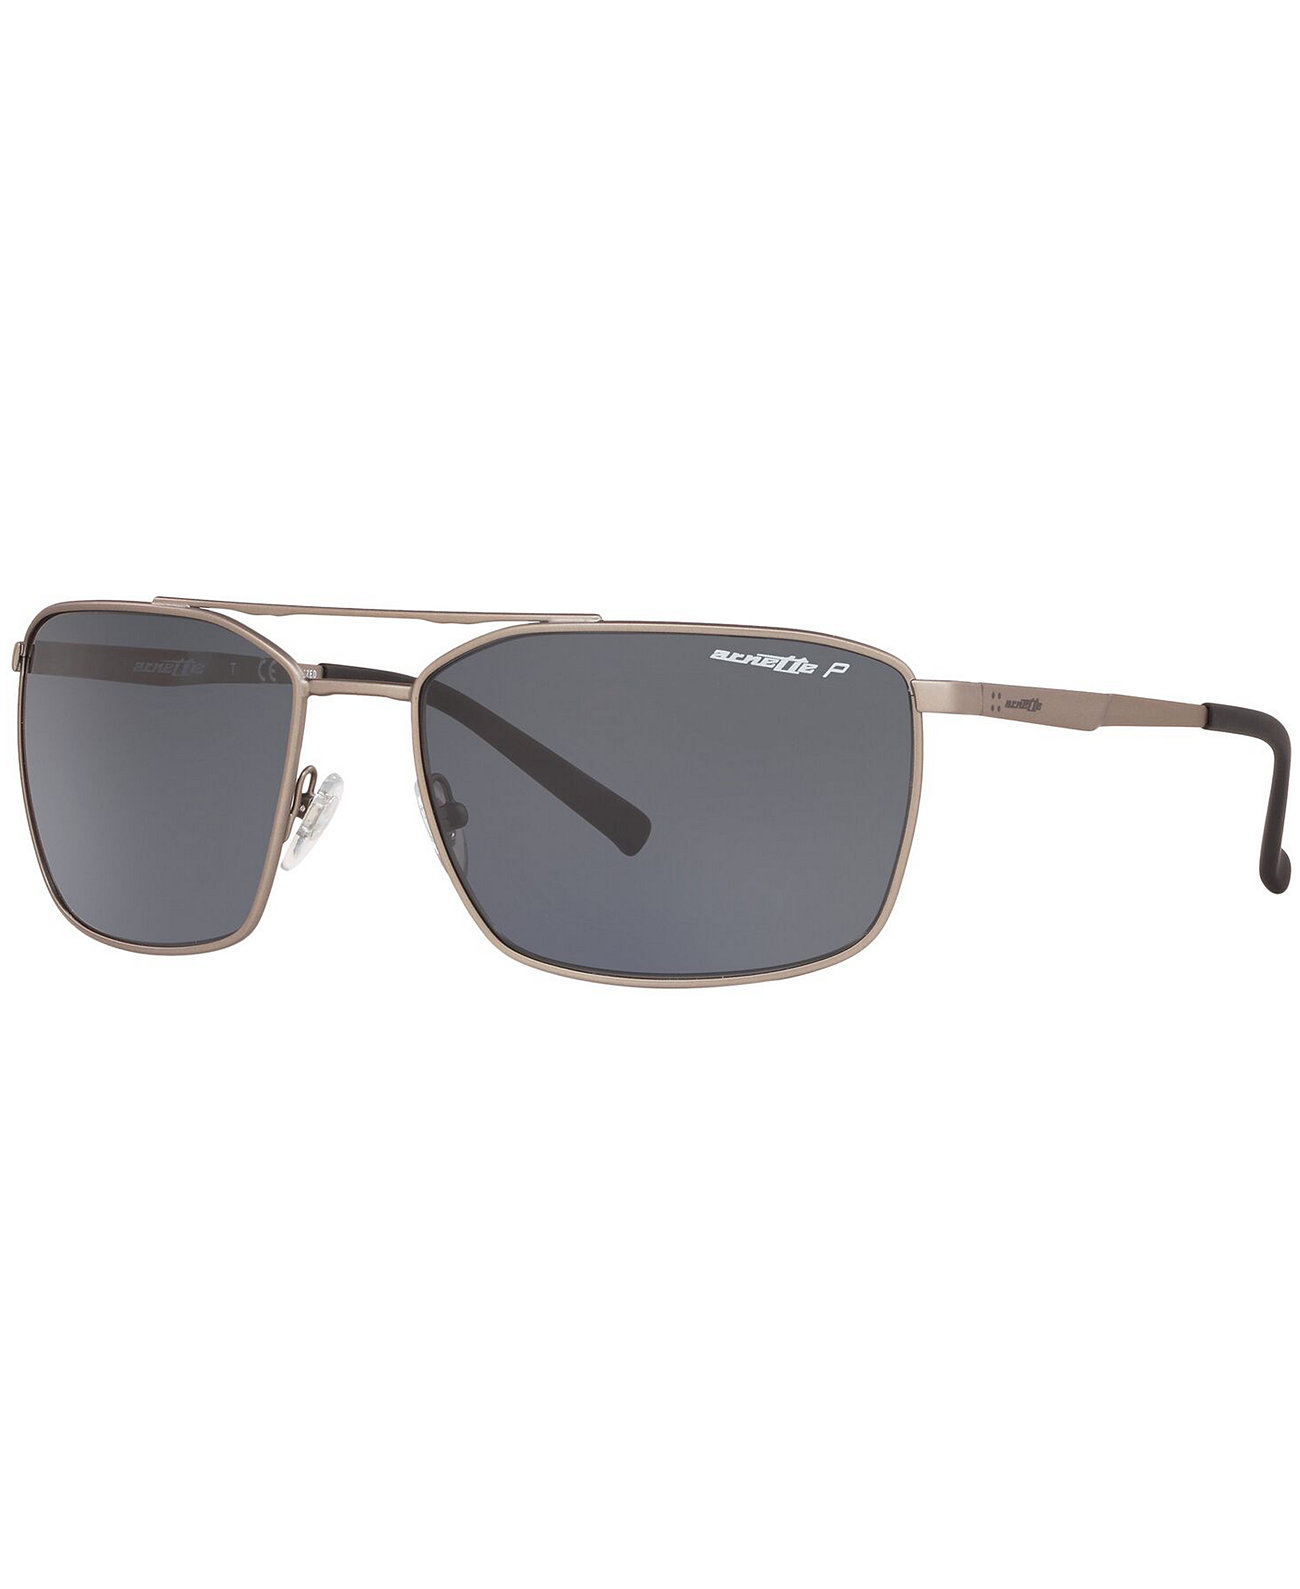 Поляризованные солнцезащитные очки, AN3080 62 MABONENG Arnette